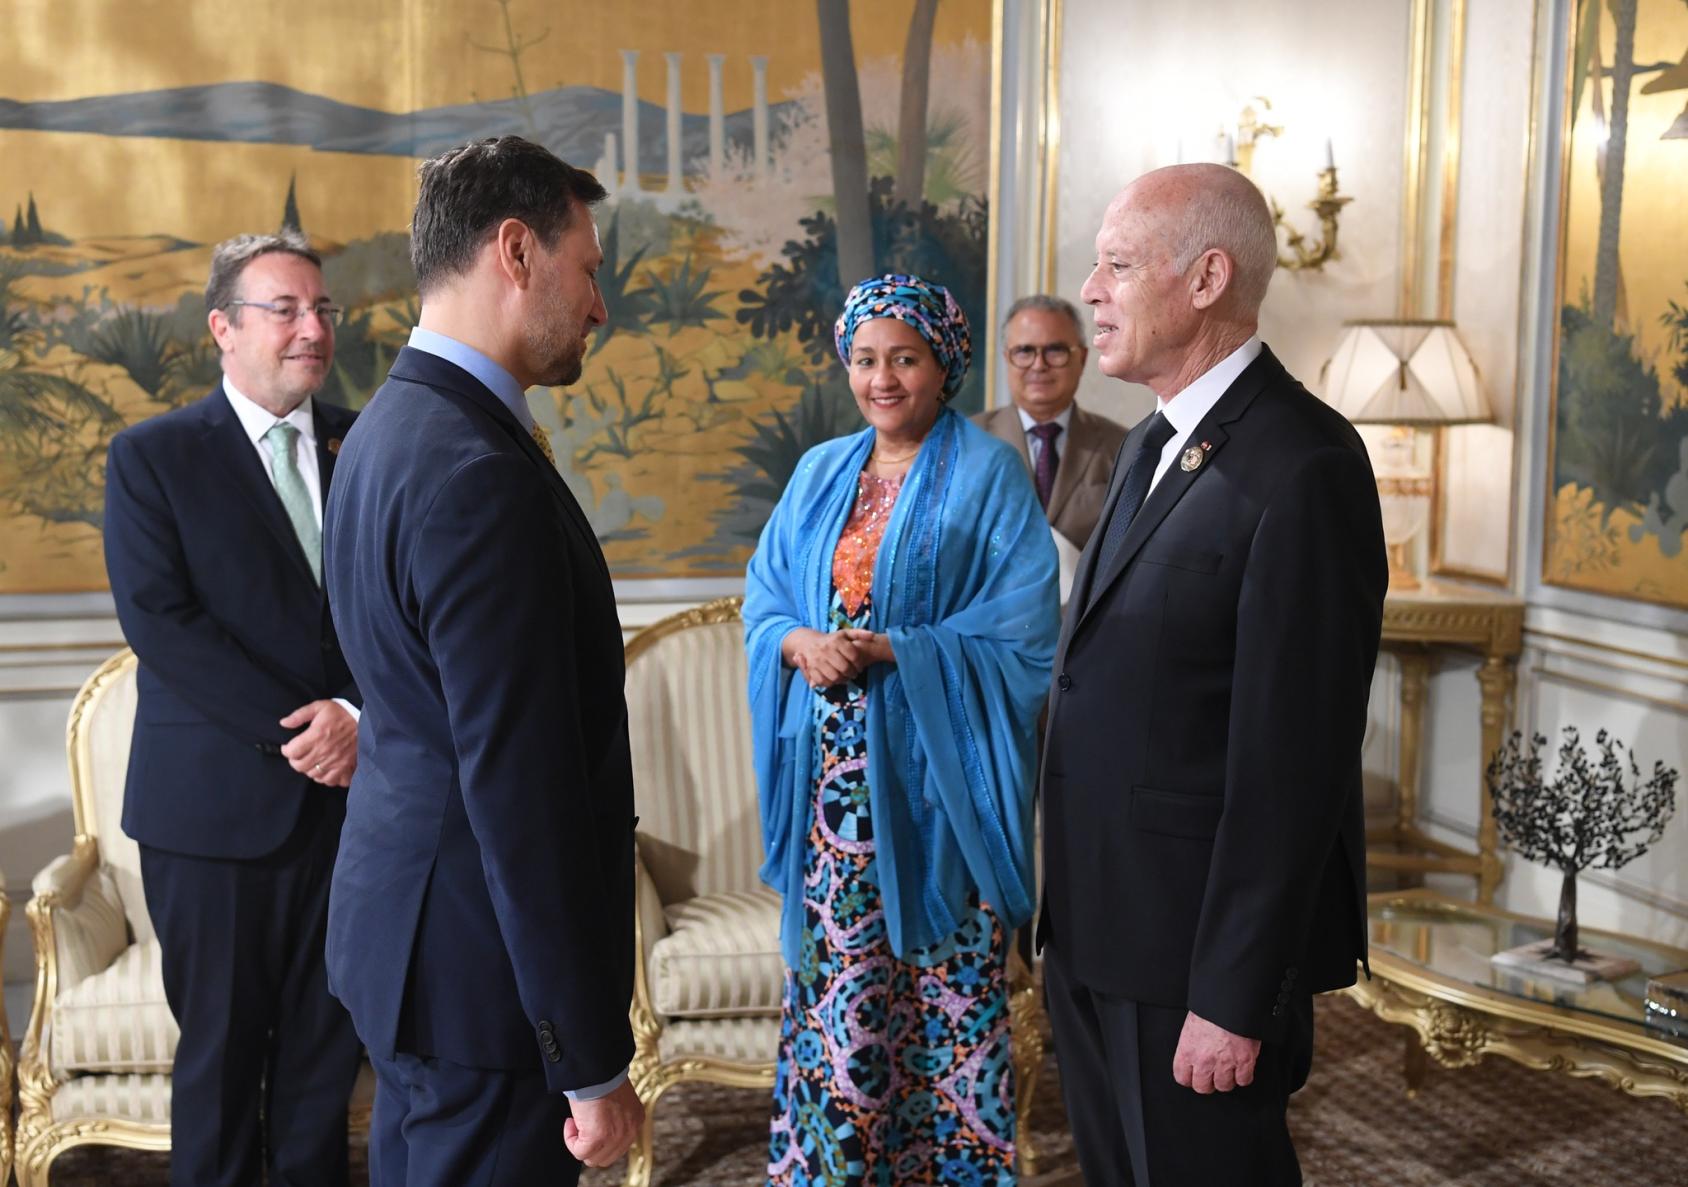 联合国常务副秘书长阿米娜·穆罕默德（中）与联合国开发计划署署长阿希姆·施泰纳（左）在2022年8月27日和28日在突尼斯市举行的第八届东京非洲发展问题国际会议期间，会见了突尼斯总统凯斯·赛义德。